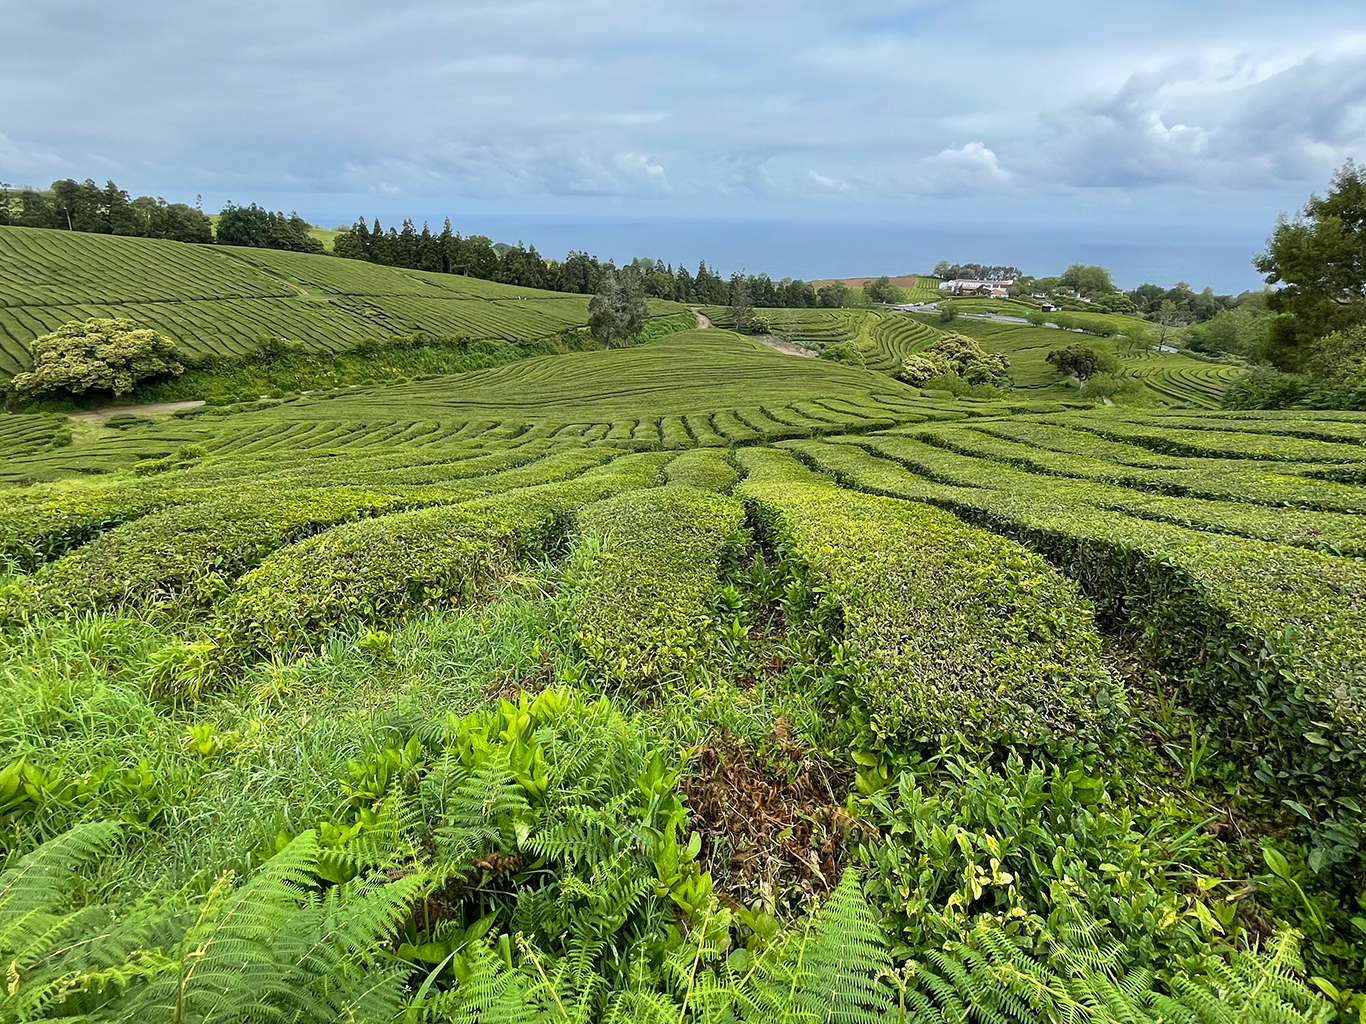 Čajové plantáže na Azorských ostrovech jsou na evropském kontinentu raritou